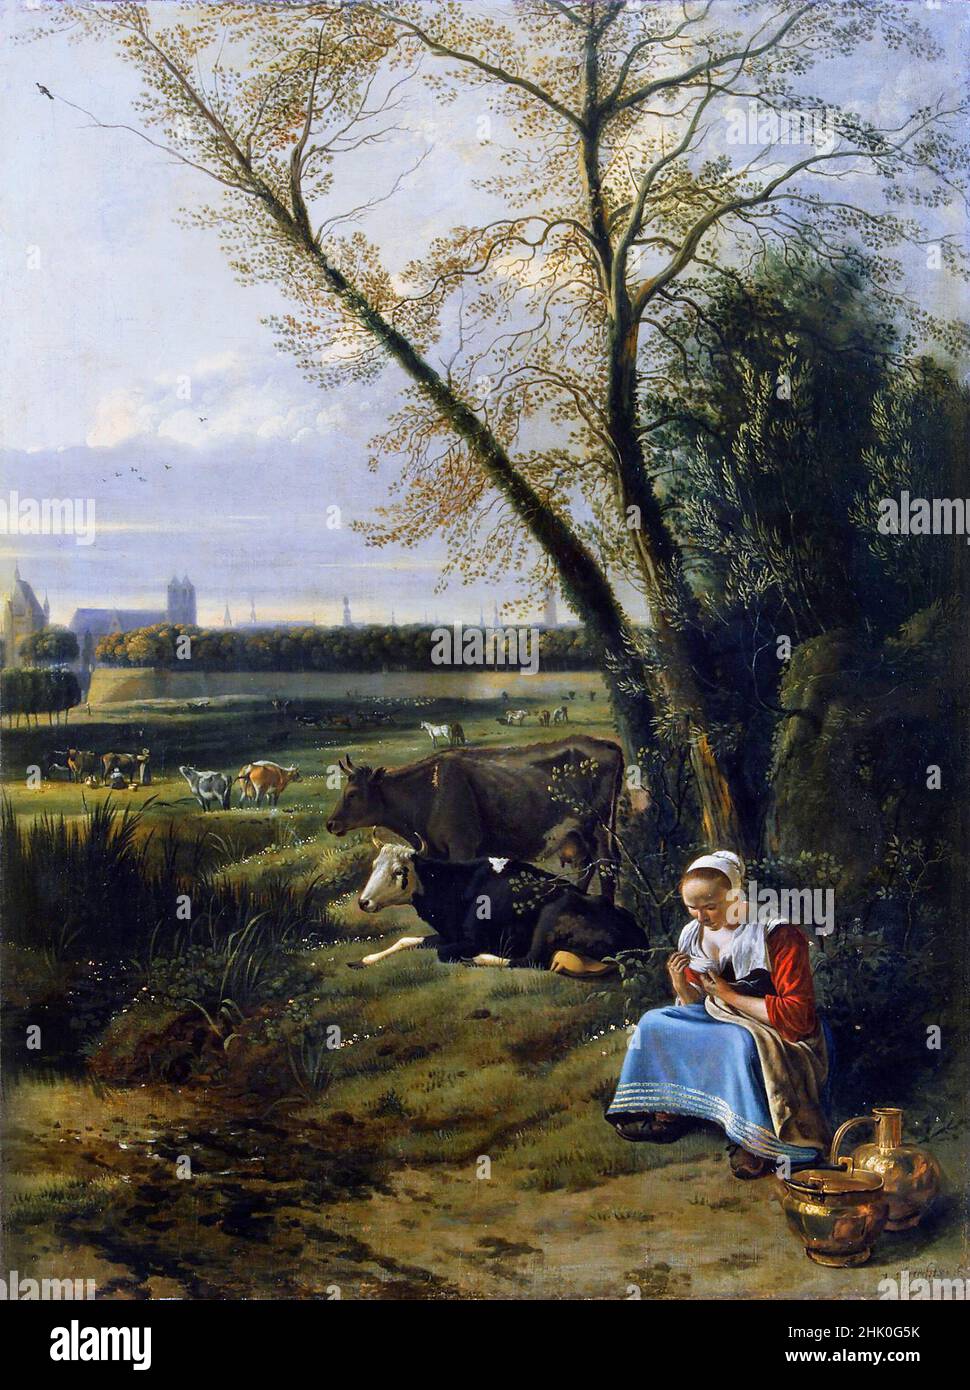 Bergers de l'artiste né à Anvers, Jan Siberechts (1627–1703), huile sur toile, 1666 Banque D'Images